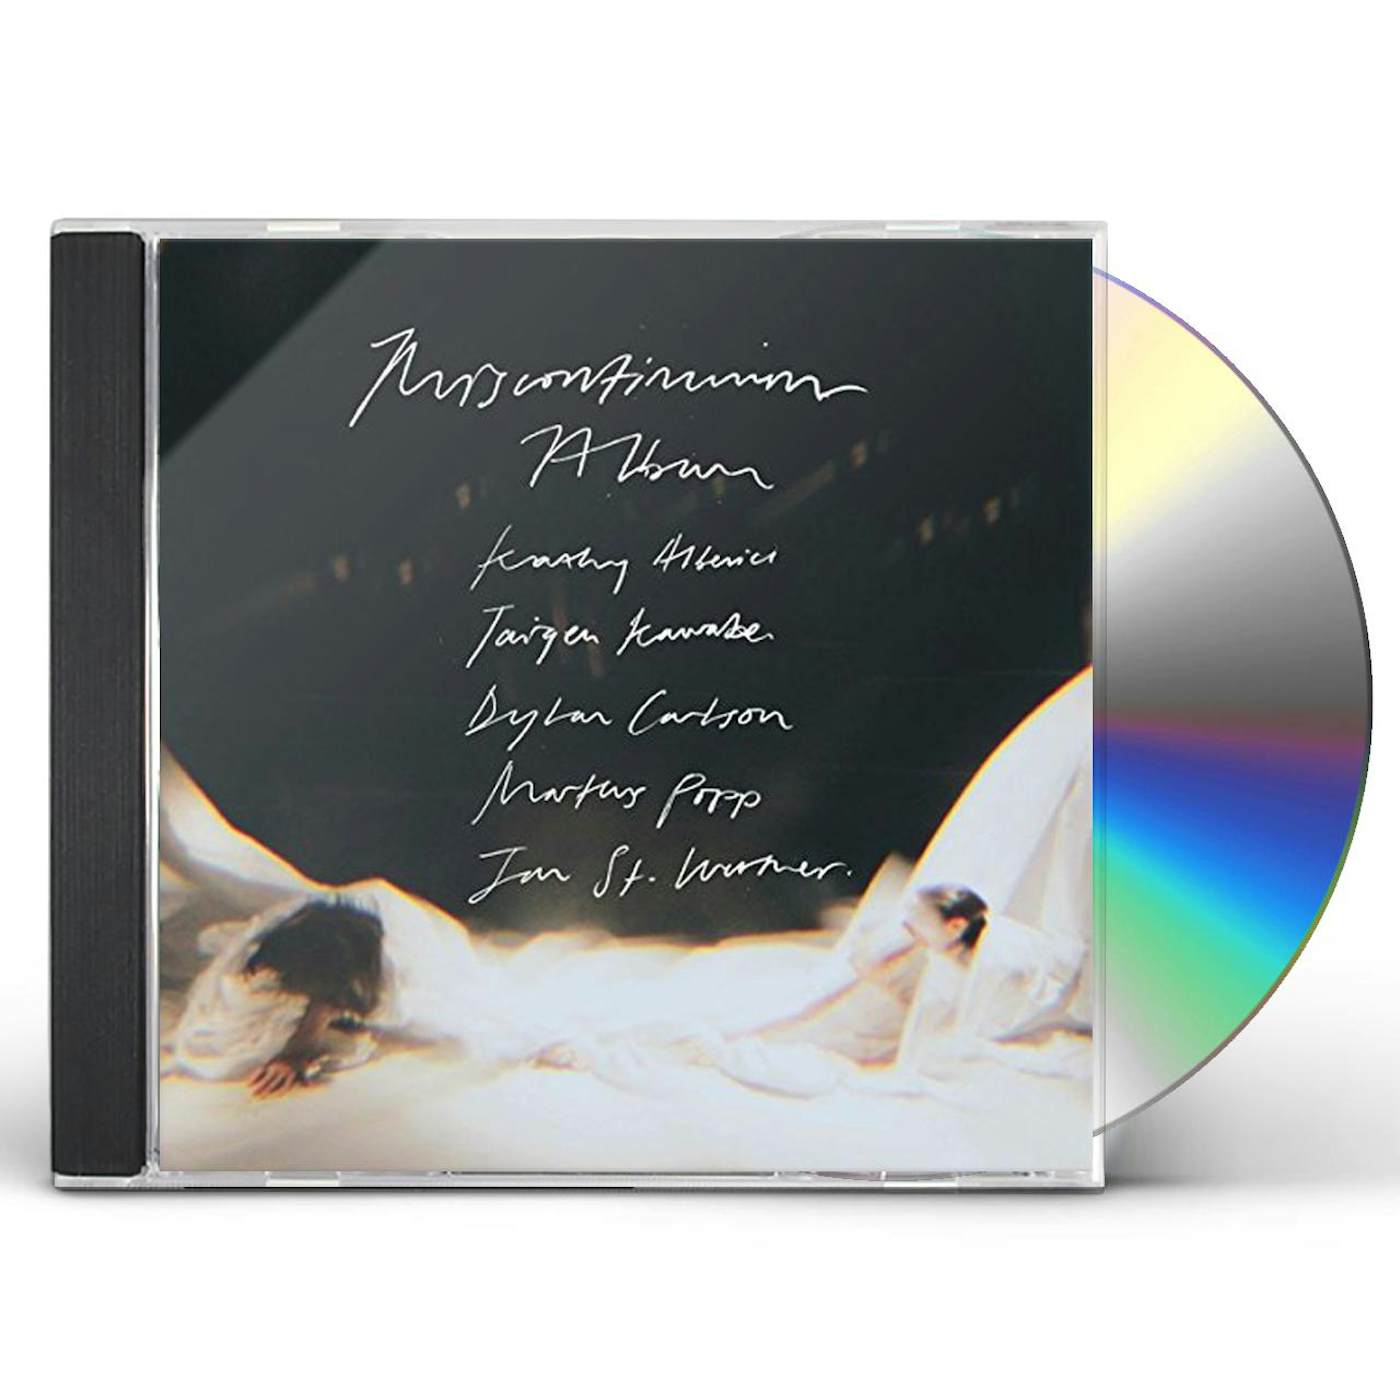 Jan St. Werner MISCONTINUUM ALBUM CD